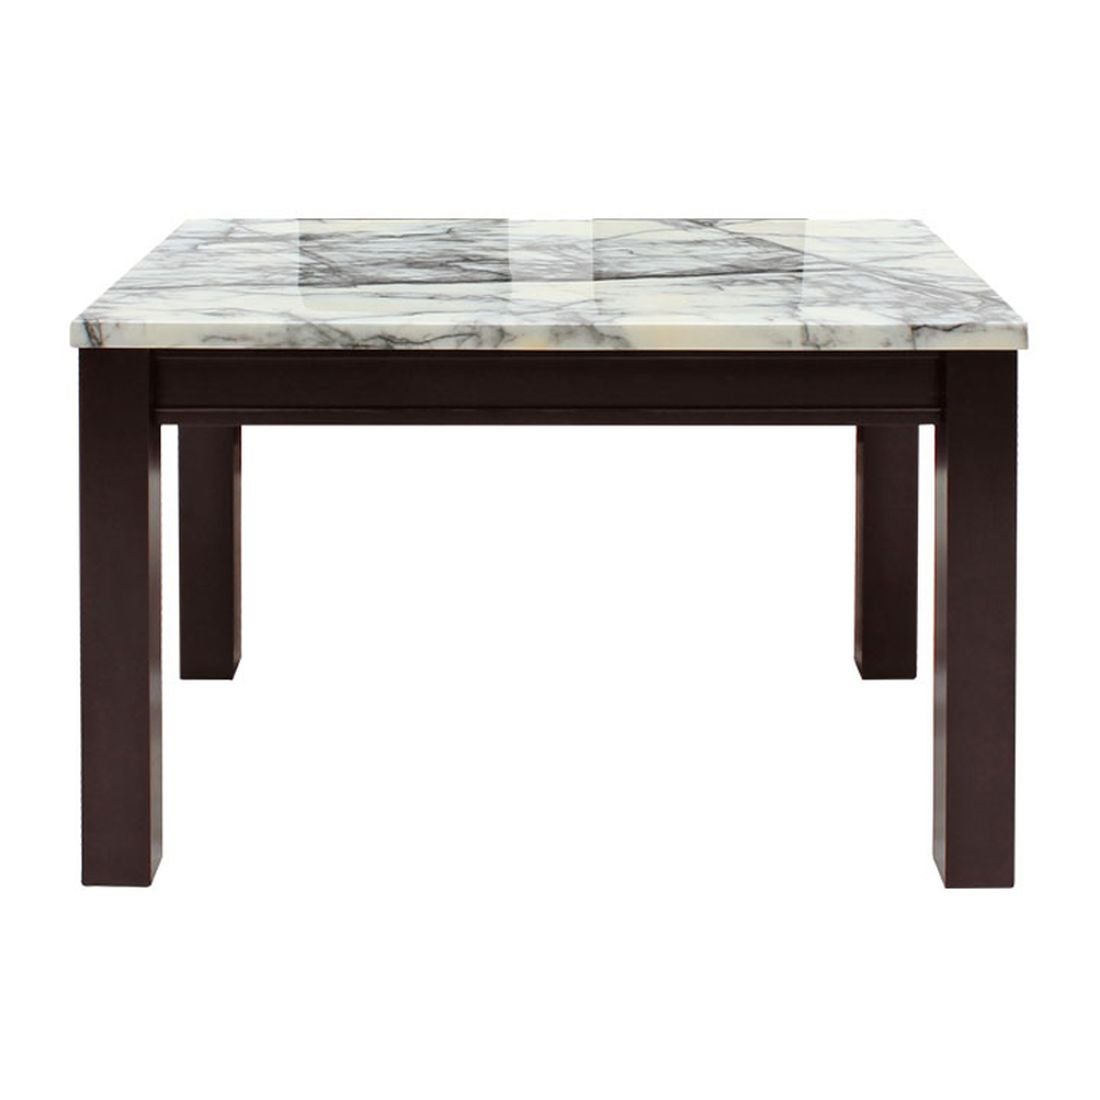 โต๊ะทานอาหาร โต๊ะอาหารขาไม้ท๊อปหิน รุ่น Finch-SB Design Square